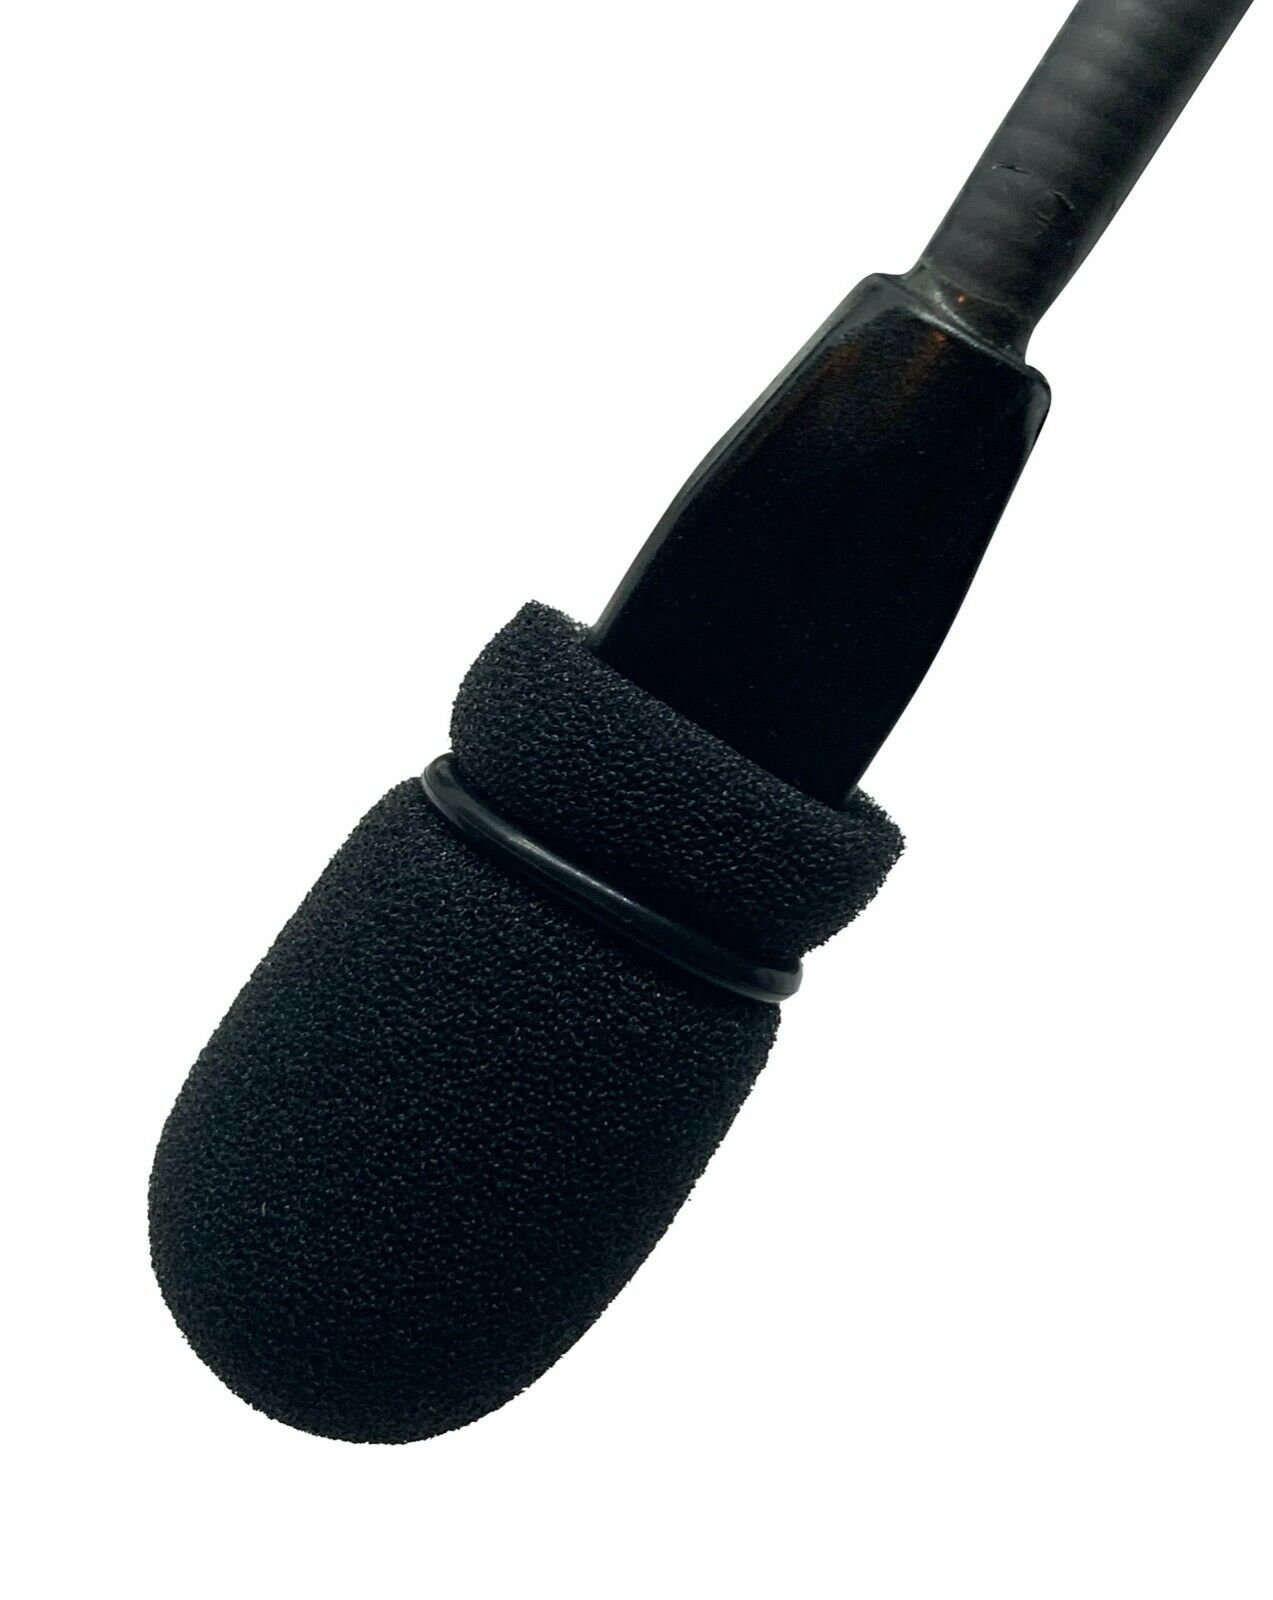 Bose A20 X A10 Aviation Headset Microphone Windscreen Mic Muff Cover Part Foam